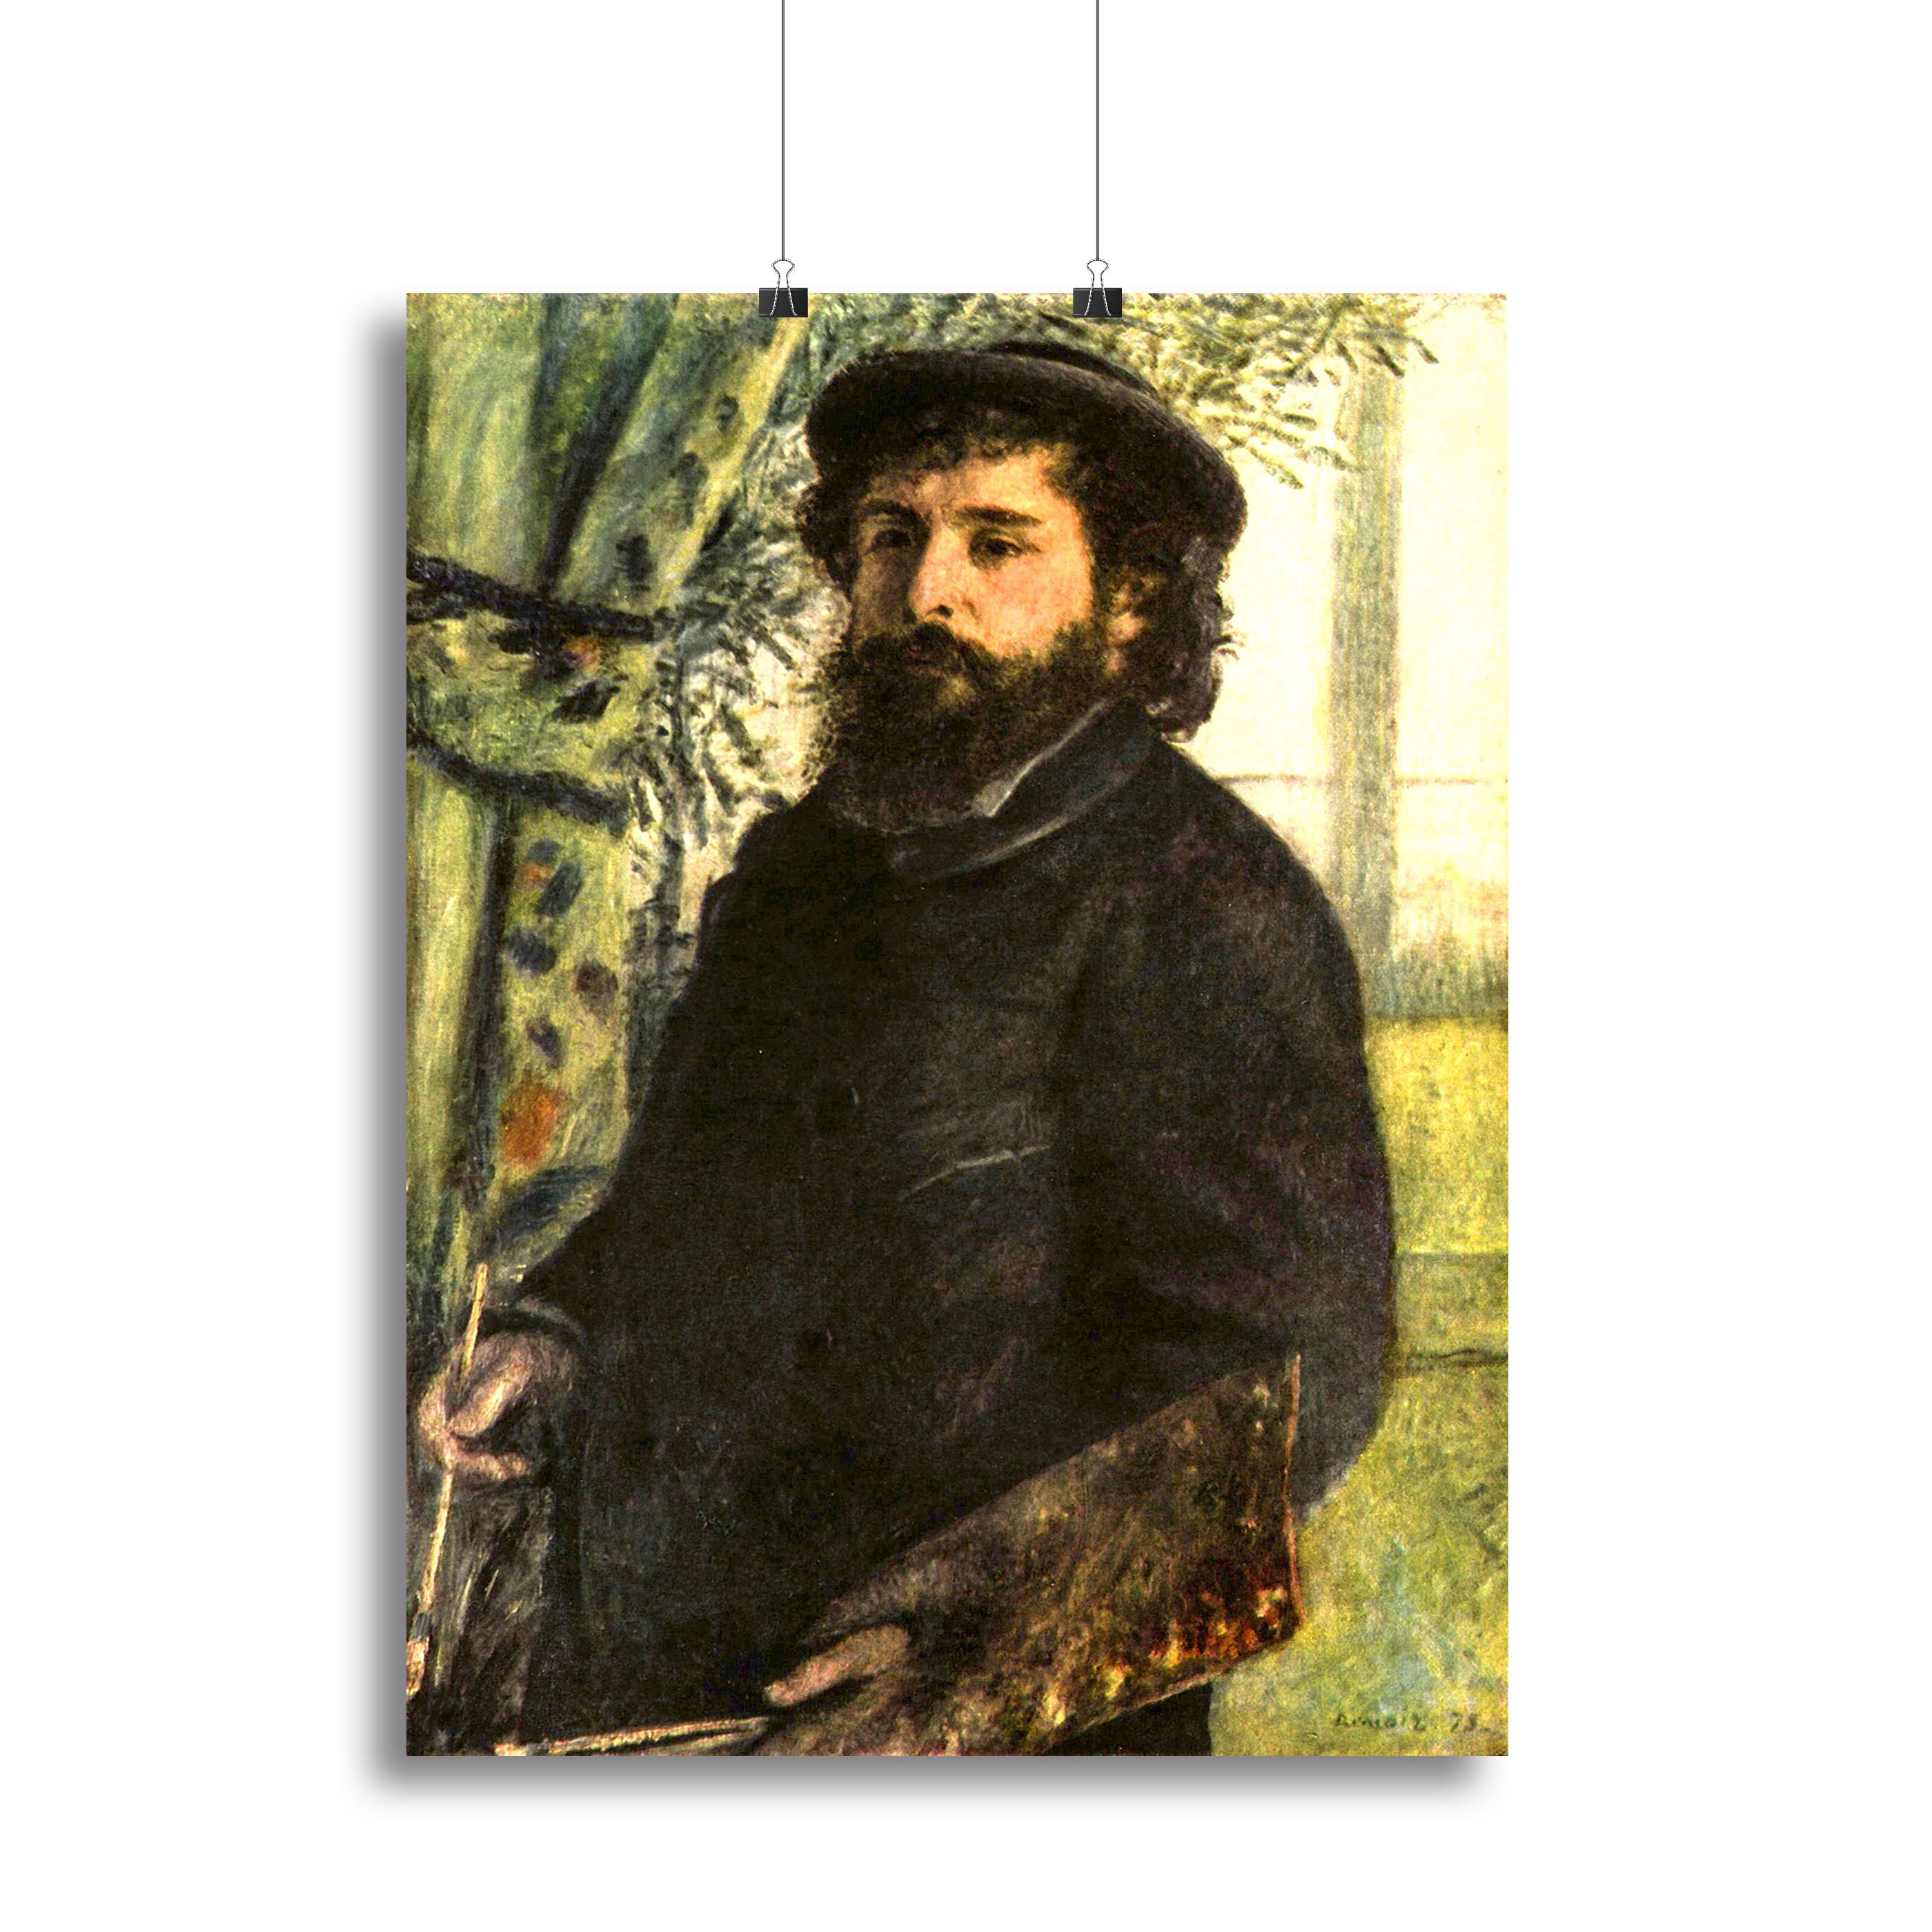 Portrait of the painter Claude Monet by Renoir Canvas Print or Poster - Canvas Art Rocks - 2